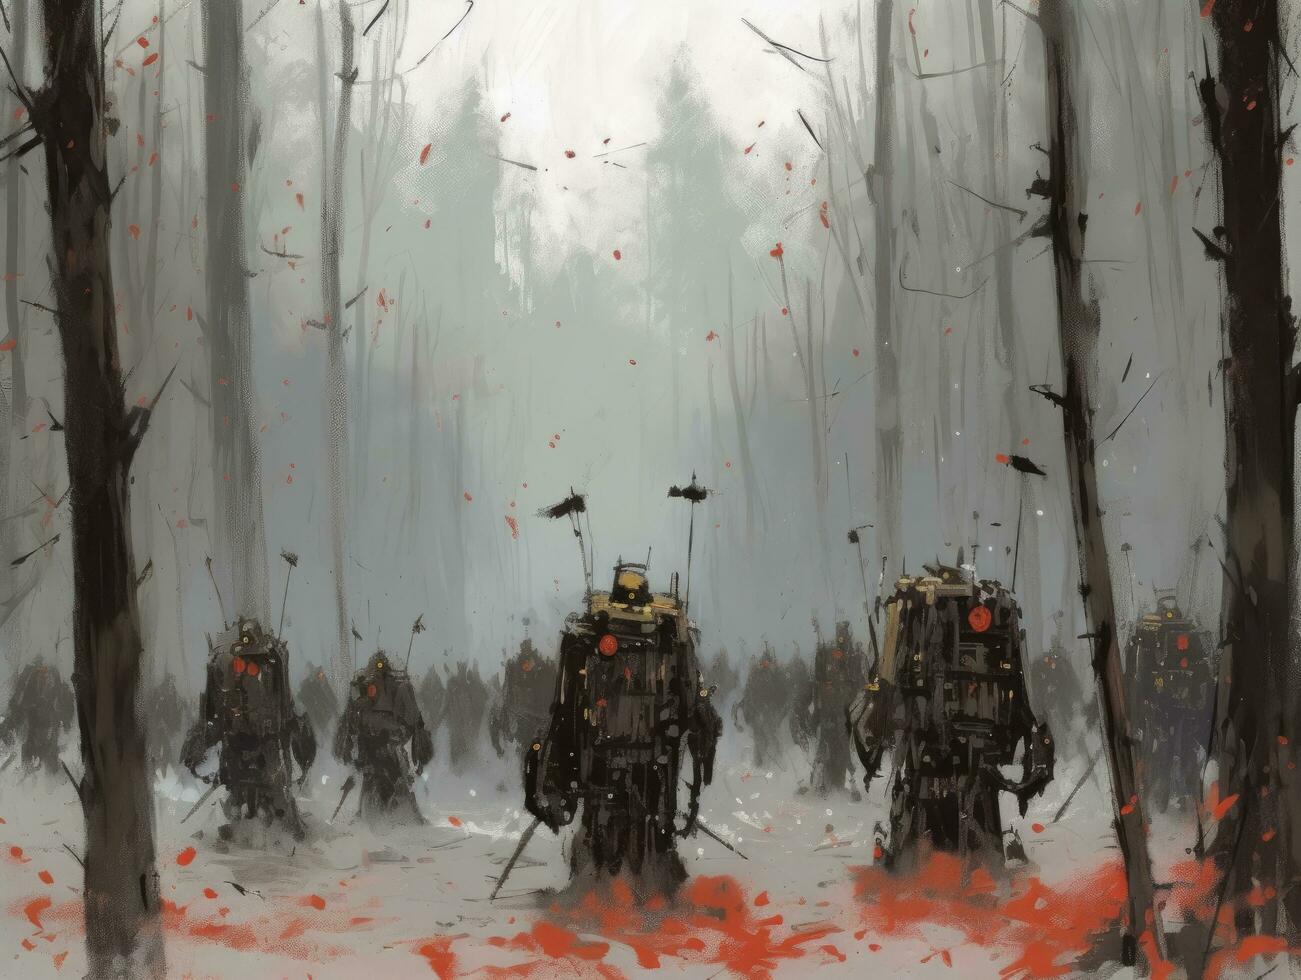 bosque batalla robot guadaña paisaje ciudad místico póster extraterrestre Steampunk fondo de pantalla fantástico foto